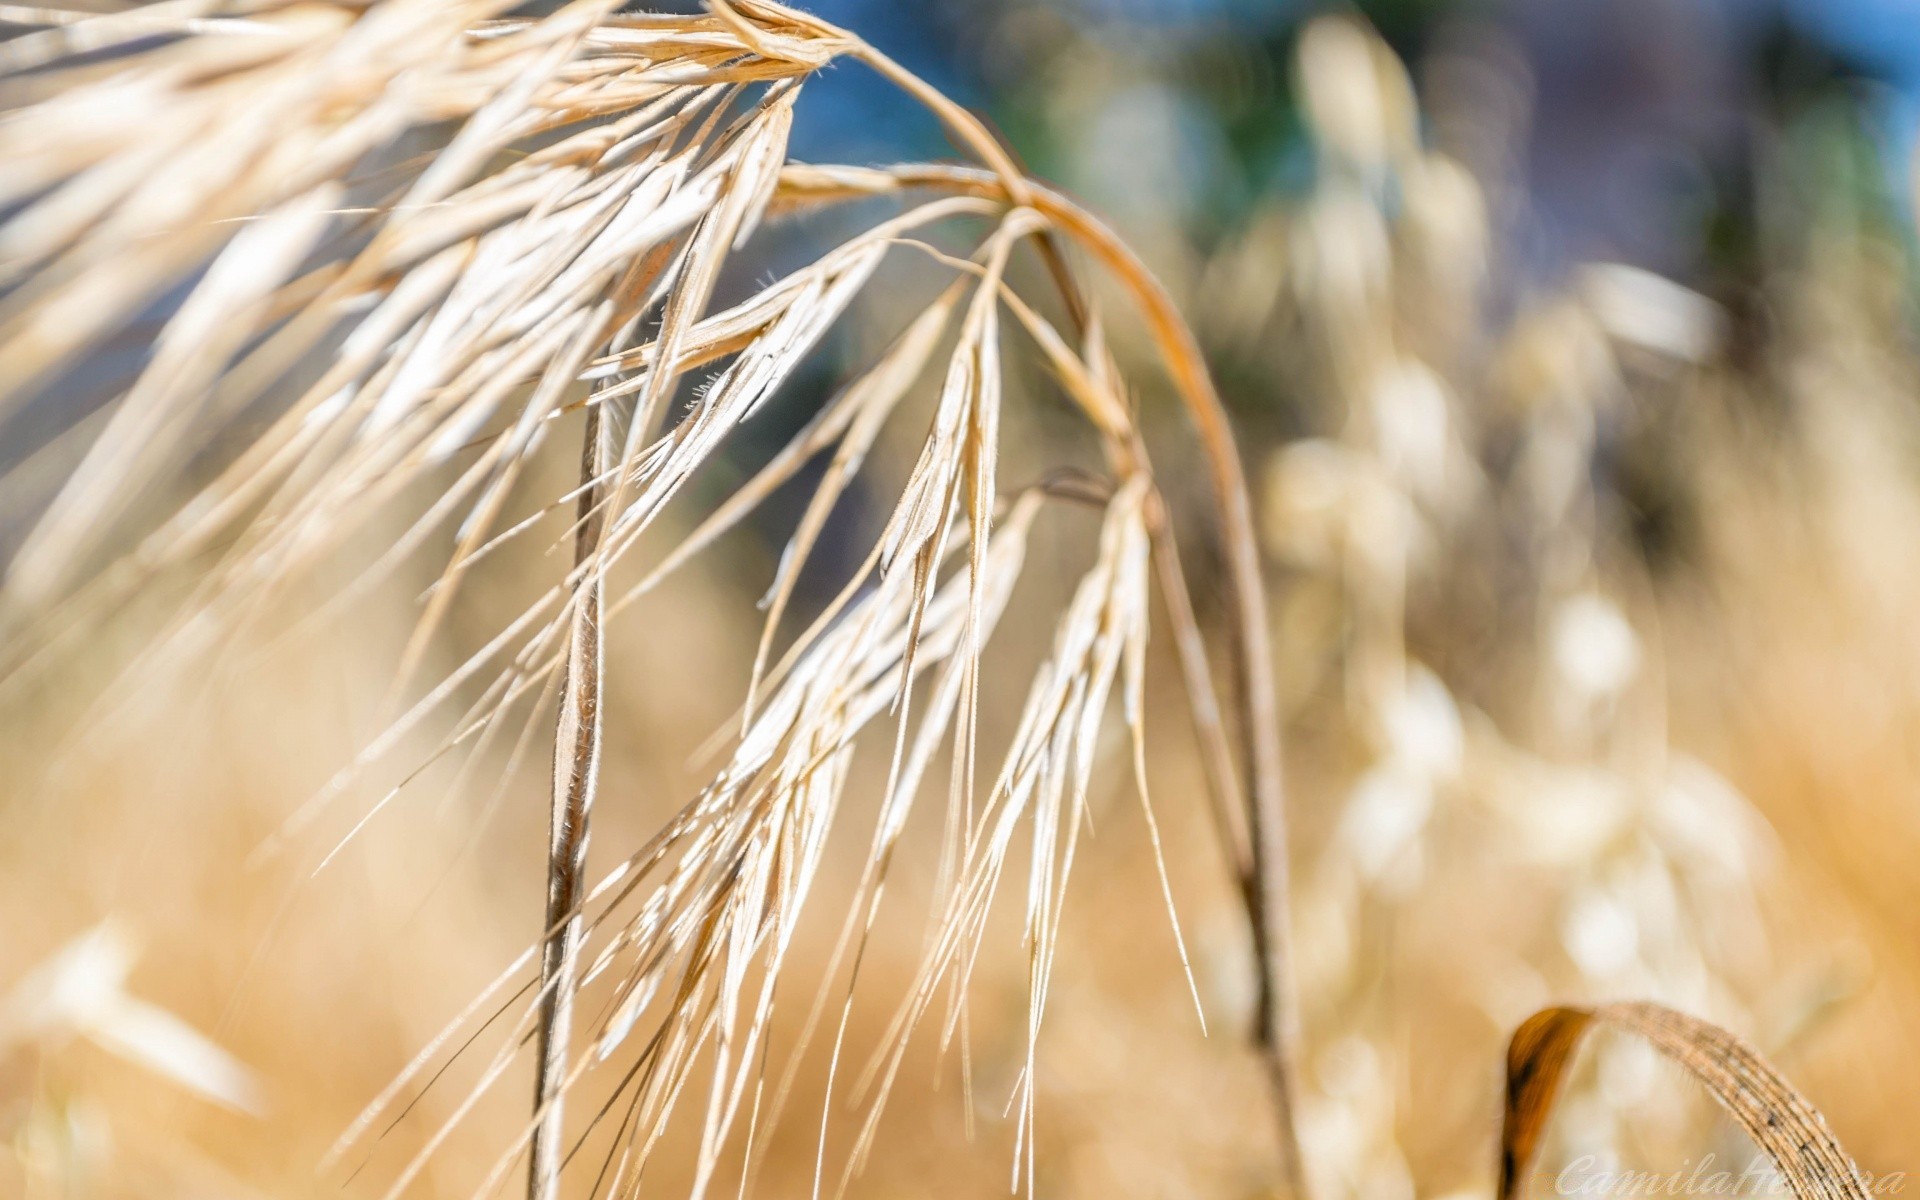 макросъемка пшеницы сельских лето соломы хлеб природа пастбище золото трава хлопья на открытом воздухе рожь яркий поле семян солнце урожай кукуруза рост